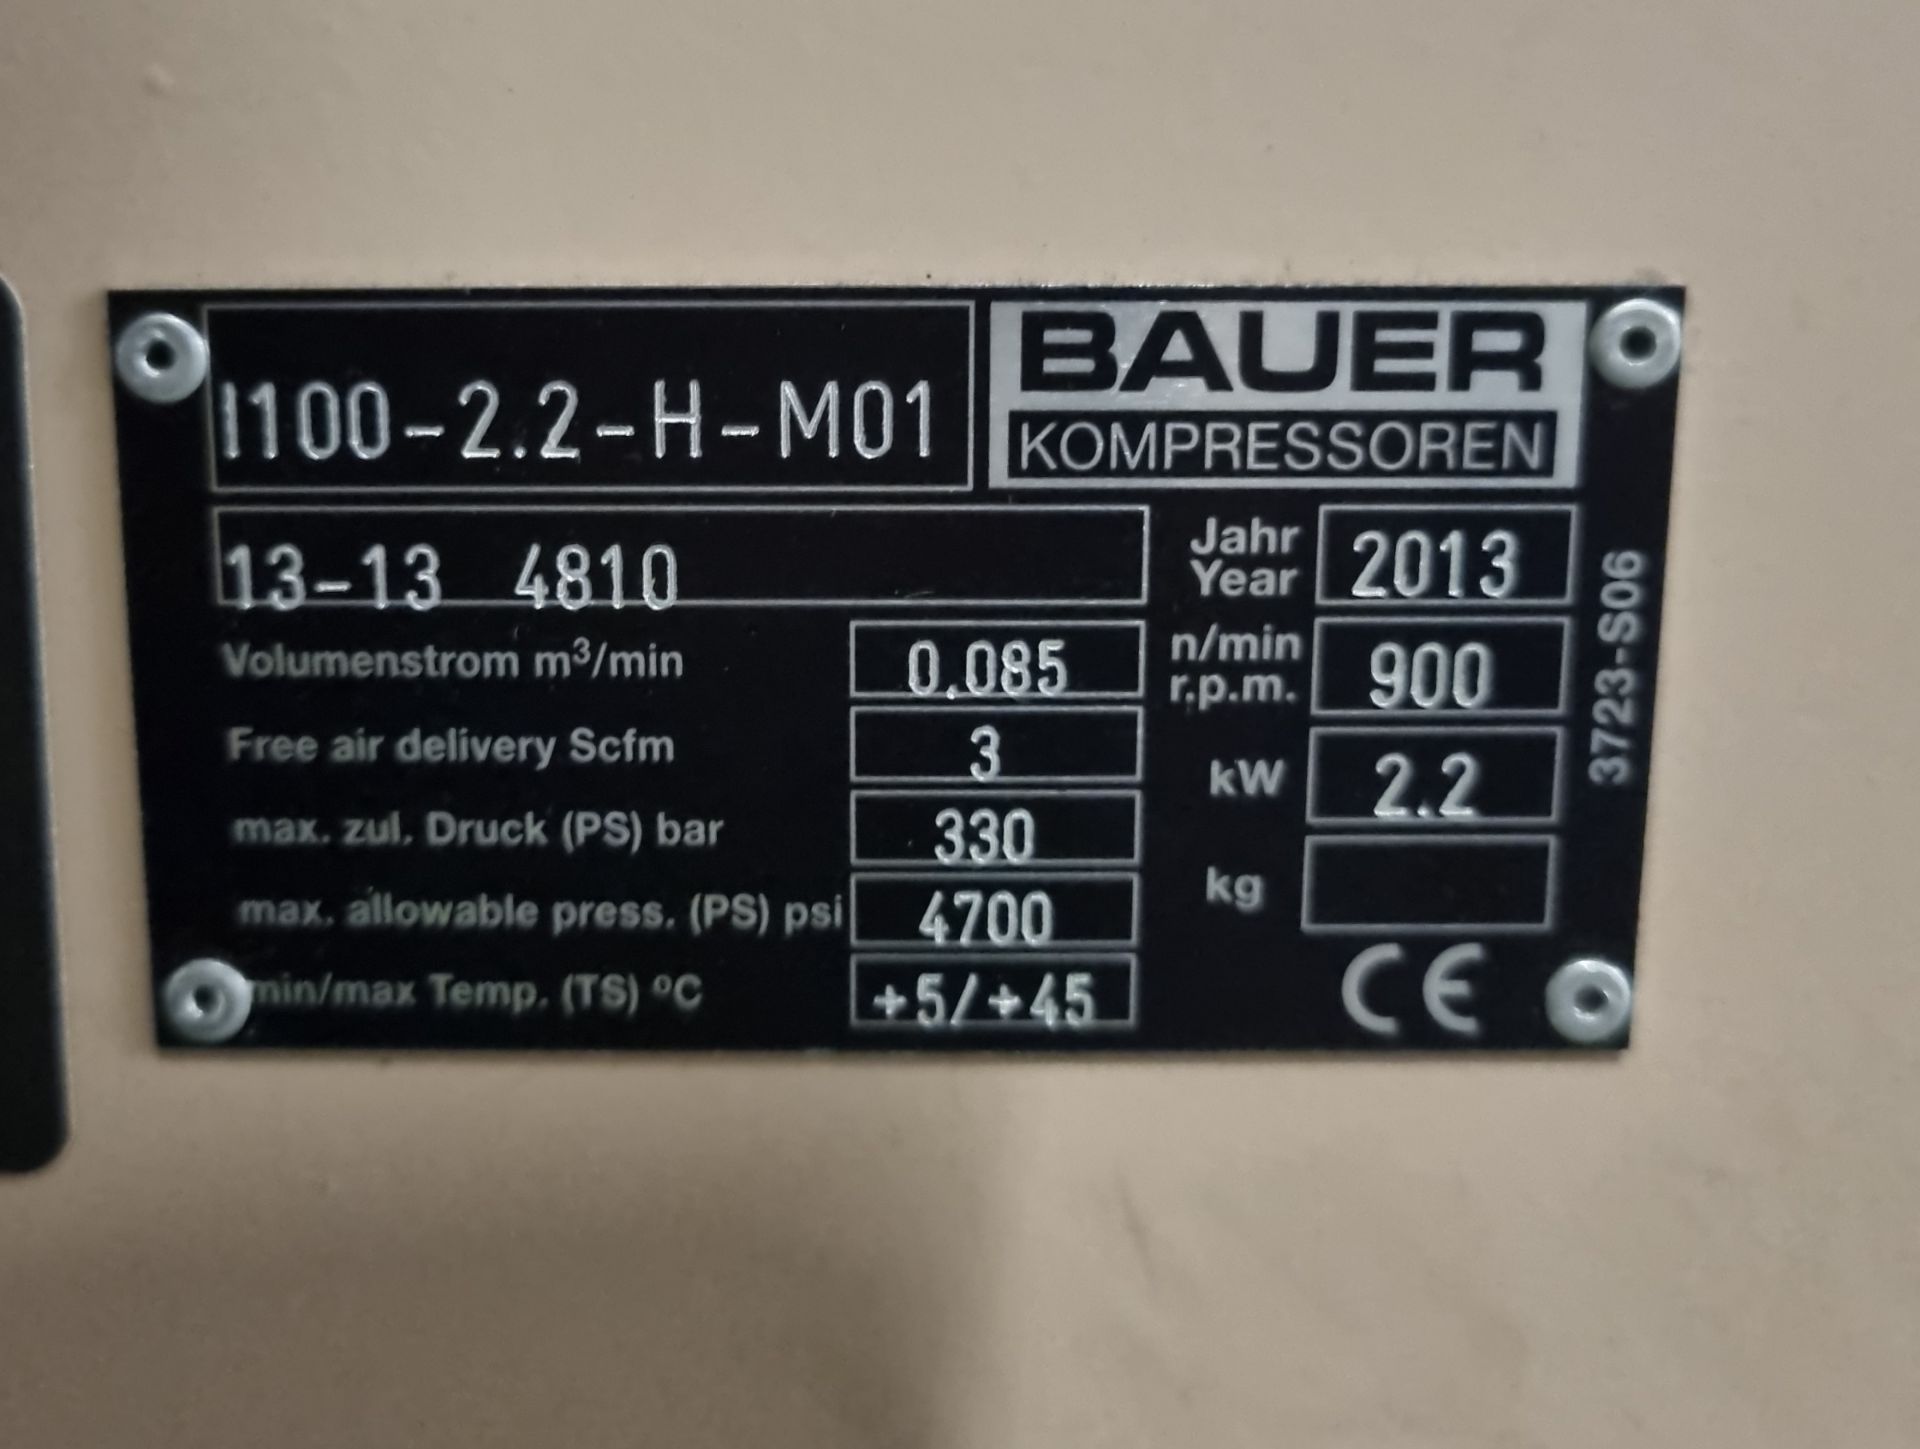 Bauer Compressor unit, Bauer cylinder refill system - see description for details - Image 12 of 13